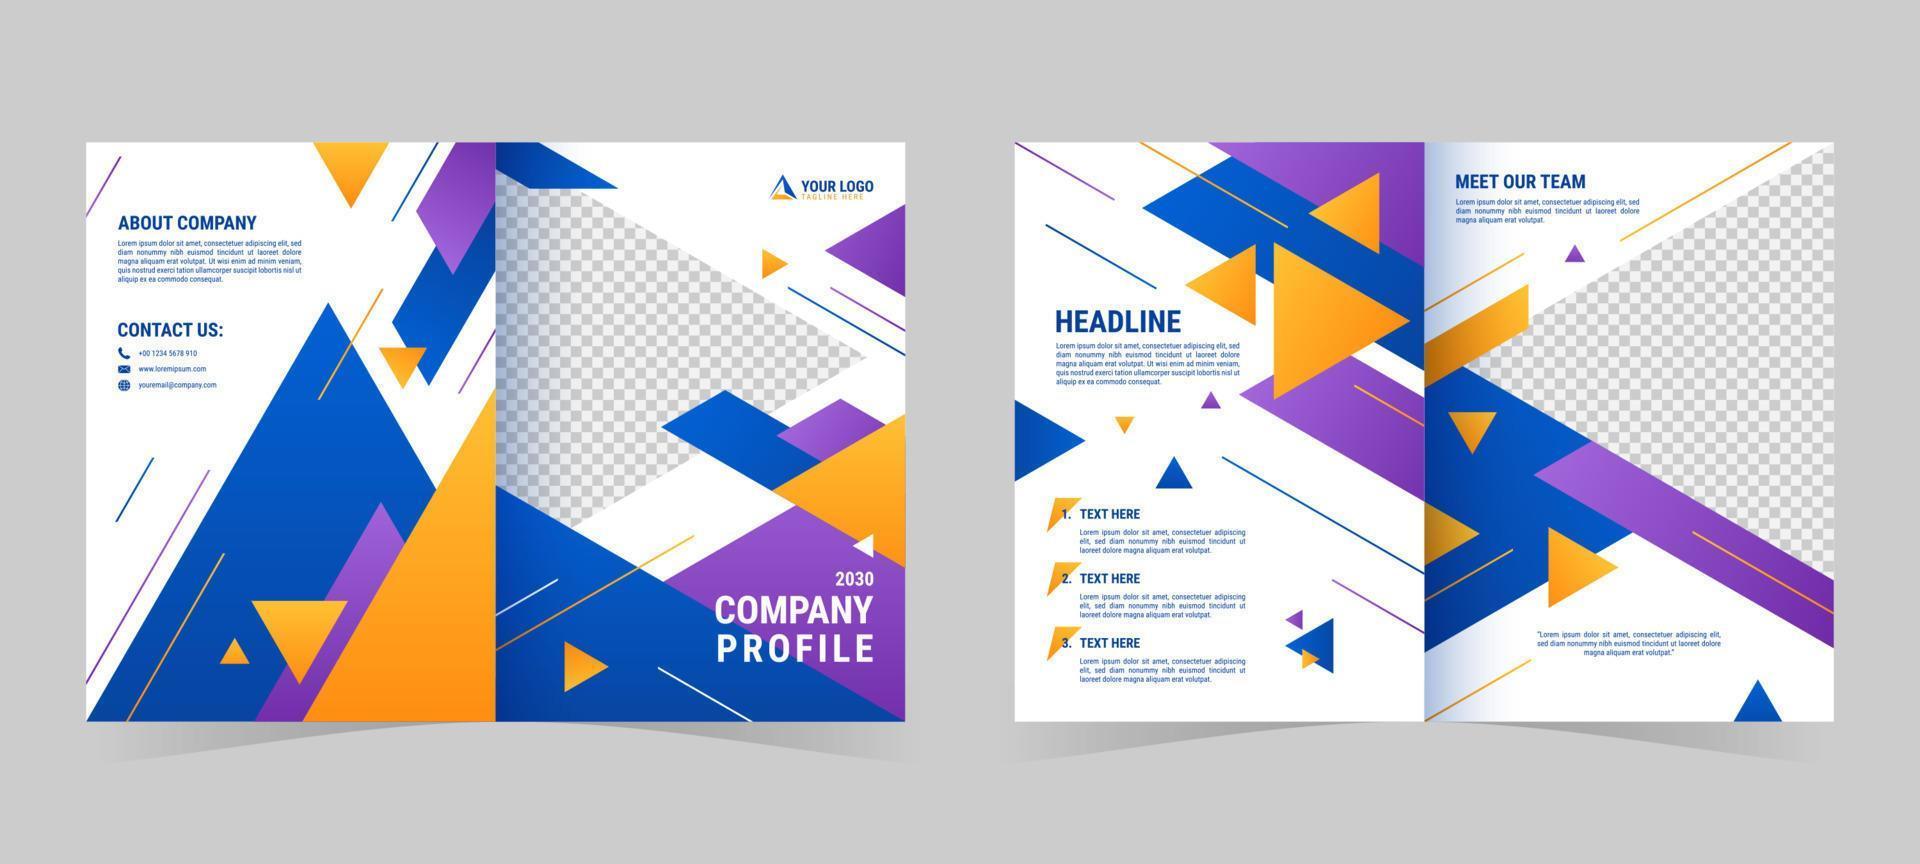 Creative Company Profile Template vector